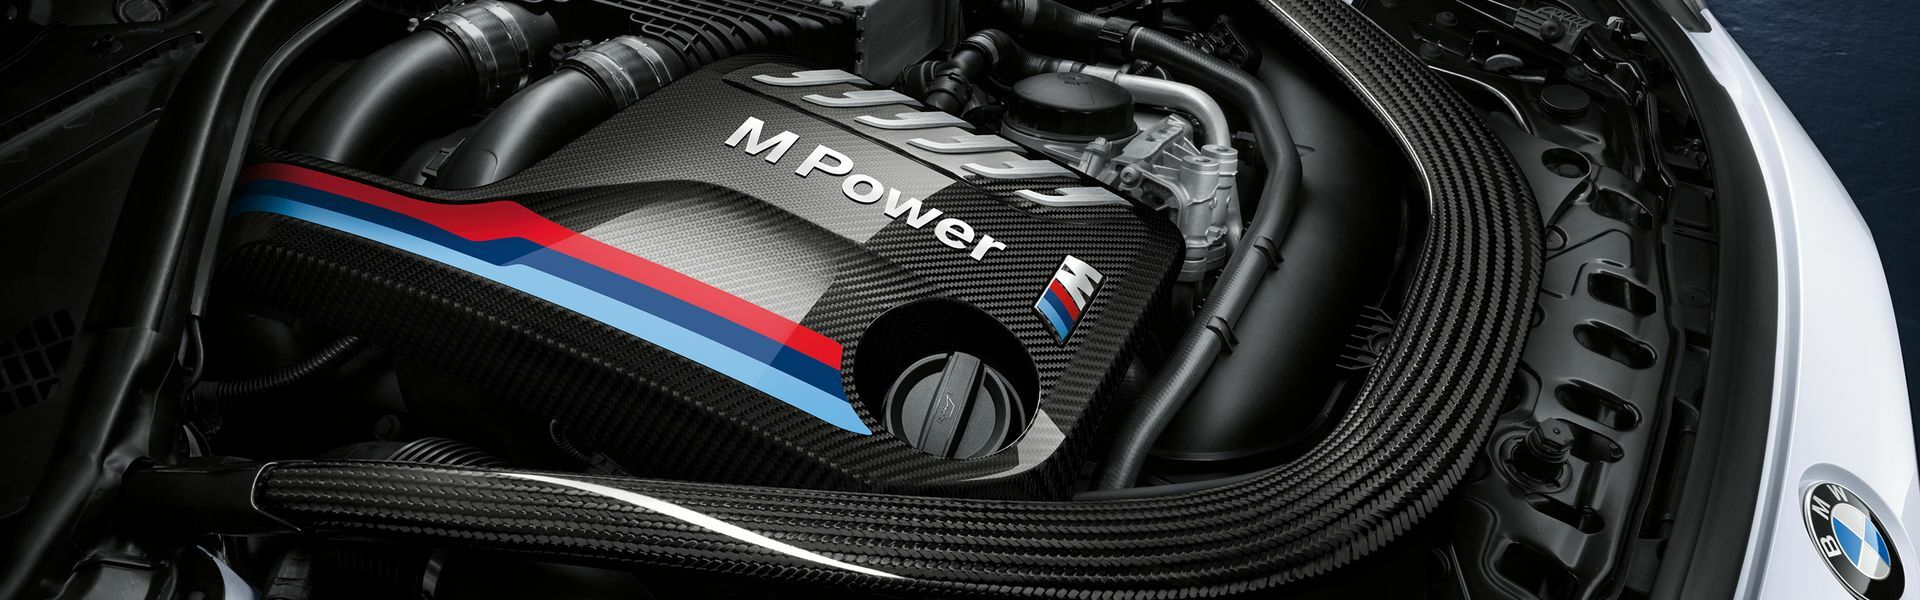 Zvýšení výkonu/ Softwarové úpravy/ Drobné performance díly pro automobil BMW X3M F97